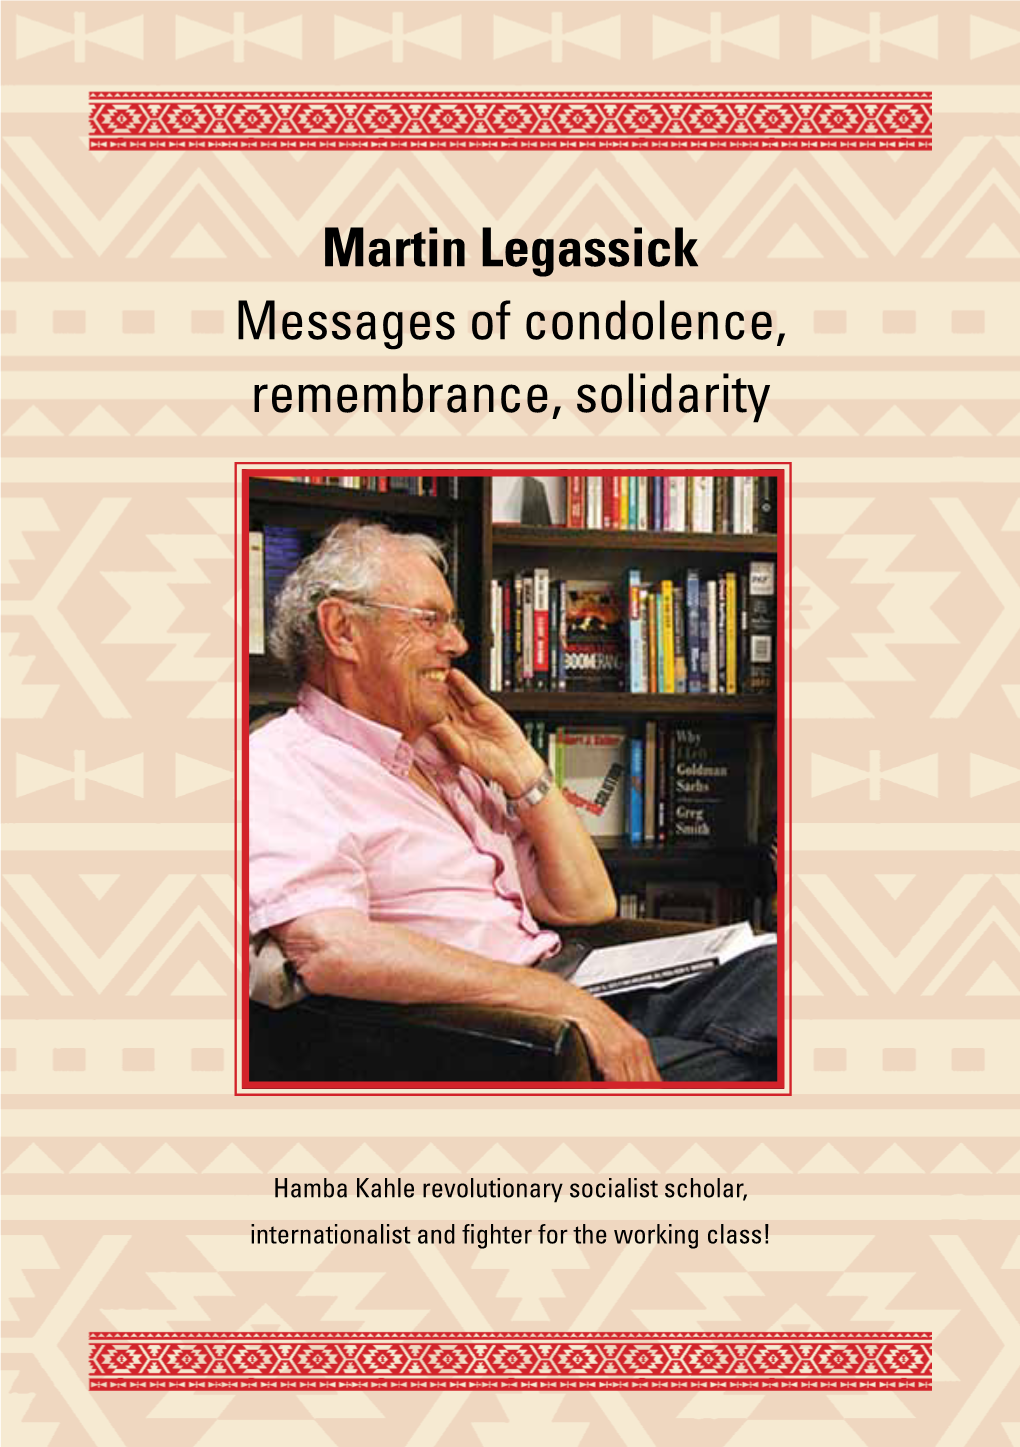 Martin Legassick Obituary